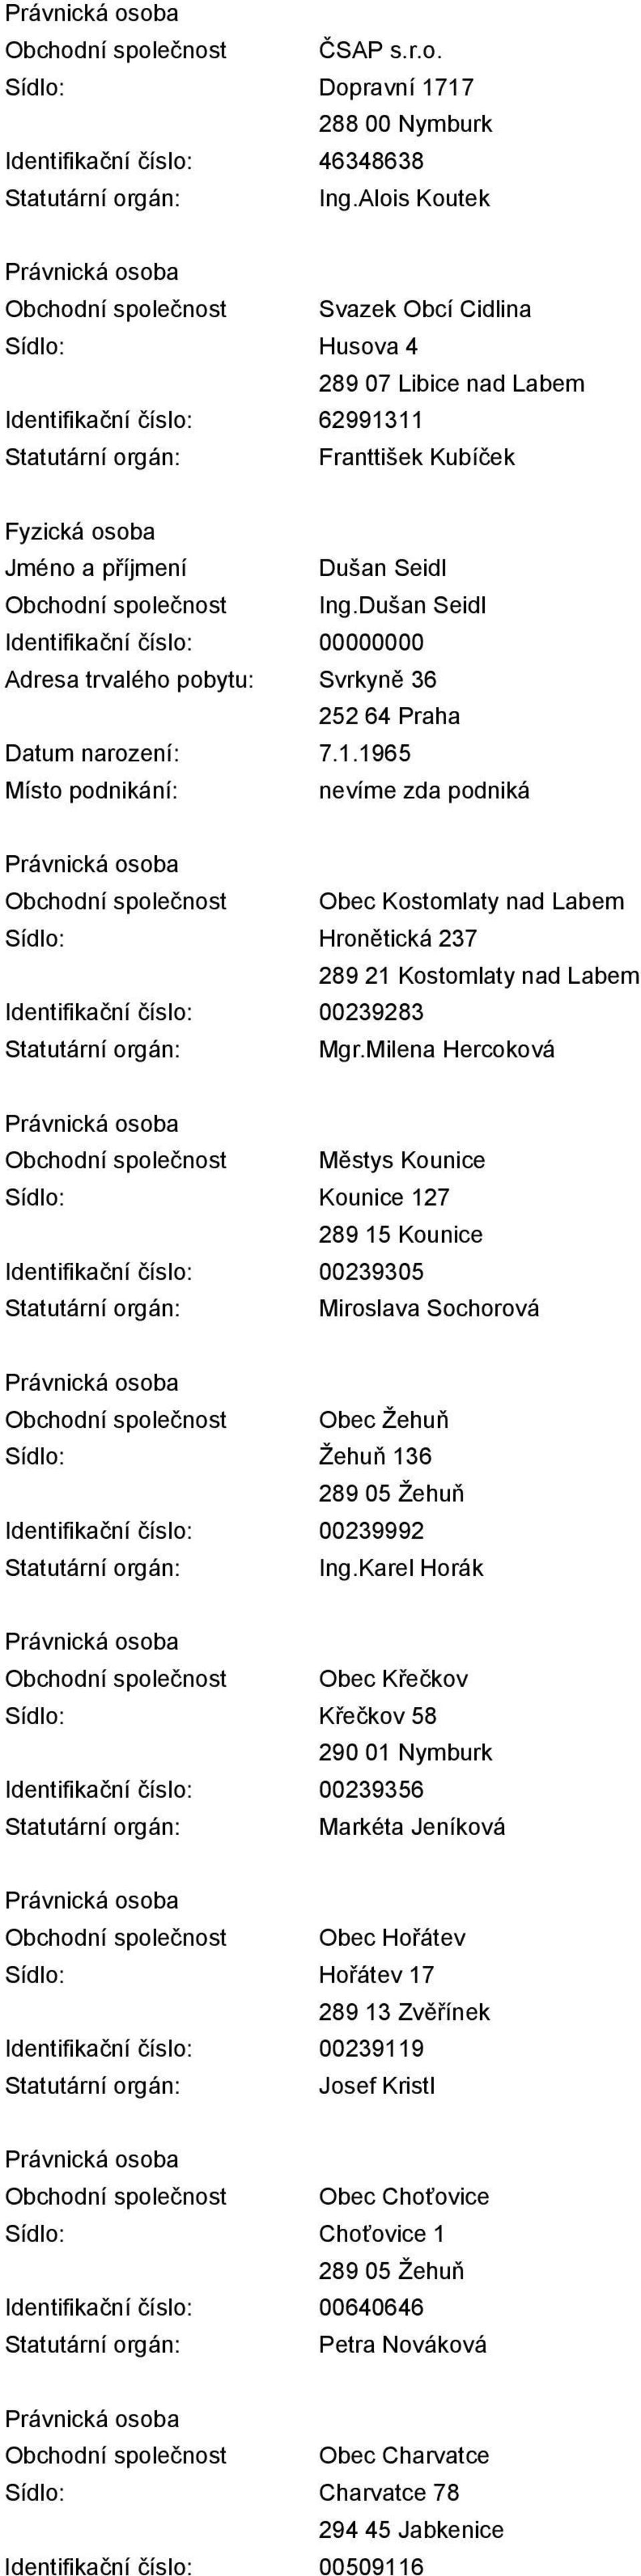 Dušan Seidl Adresa trvalého pobytu: Svrkyně 36 252 64 Praha Datum narození: 7.1.